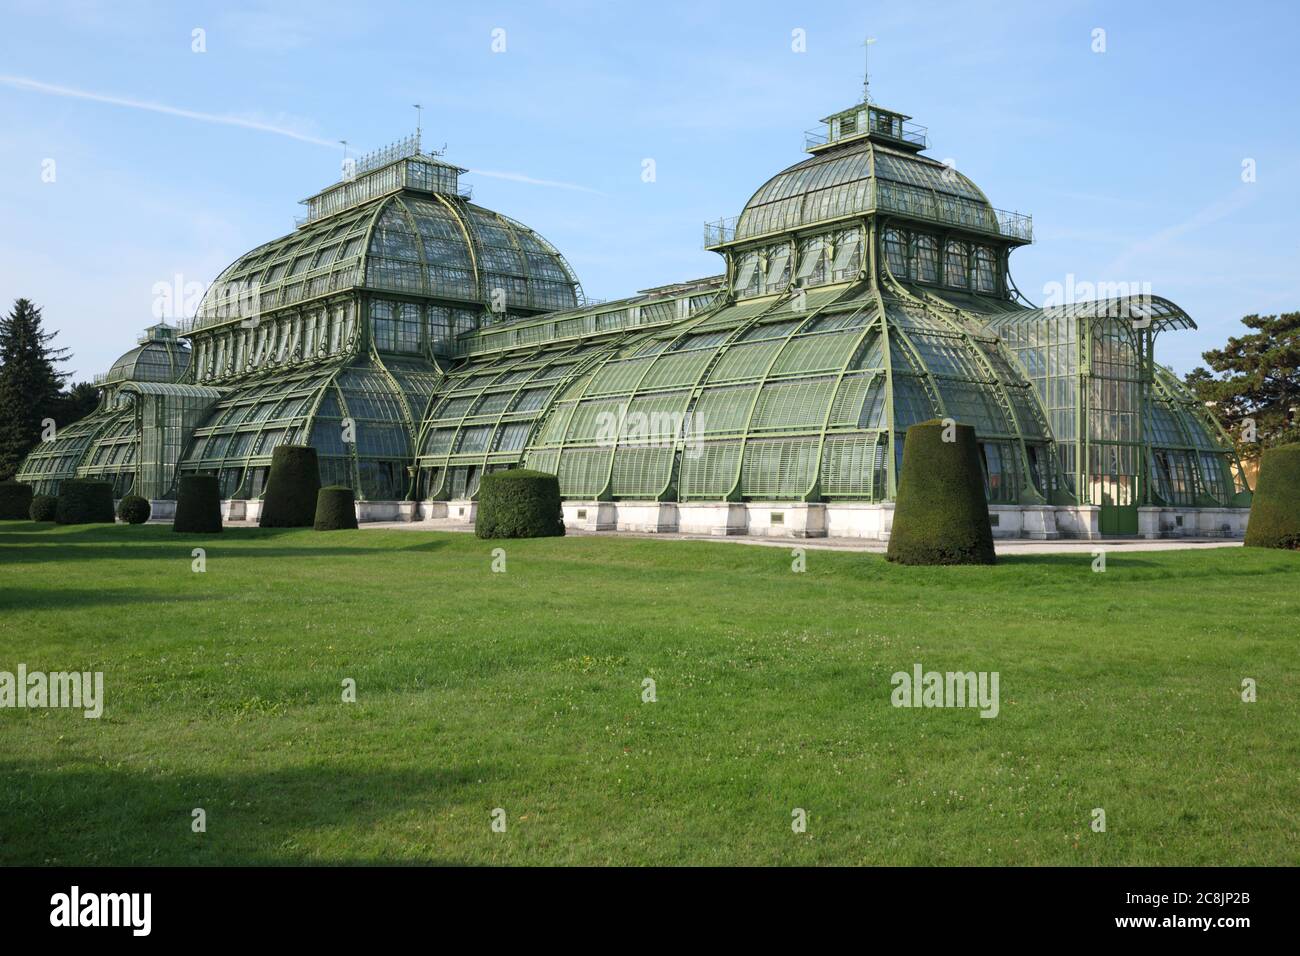 Green house Palmenhaus Schonbrunn in Schonbrunn palace park, Vienna, Austria Stock Photo